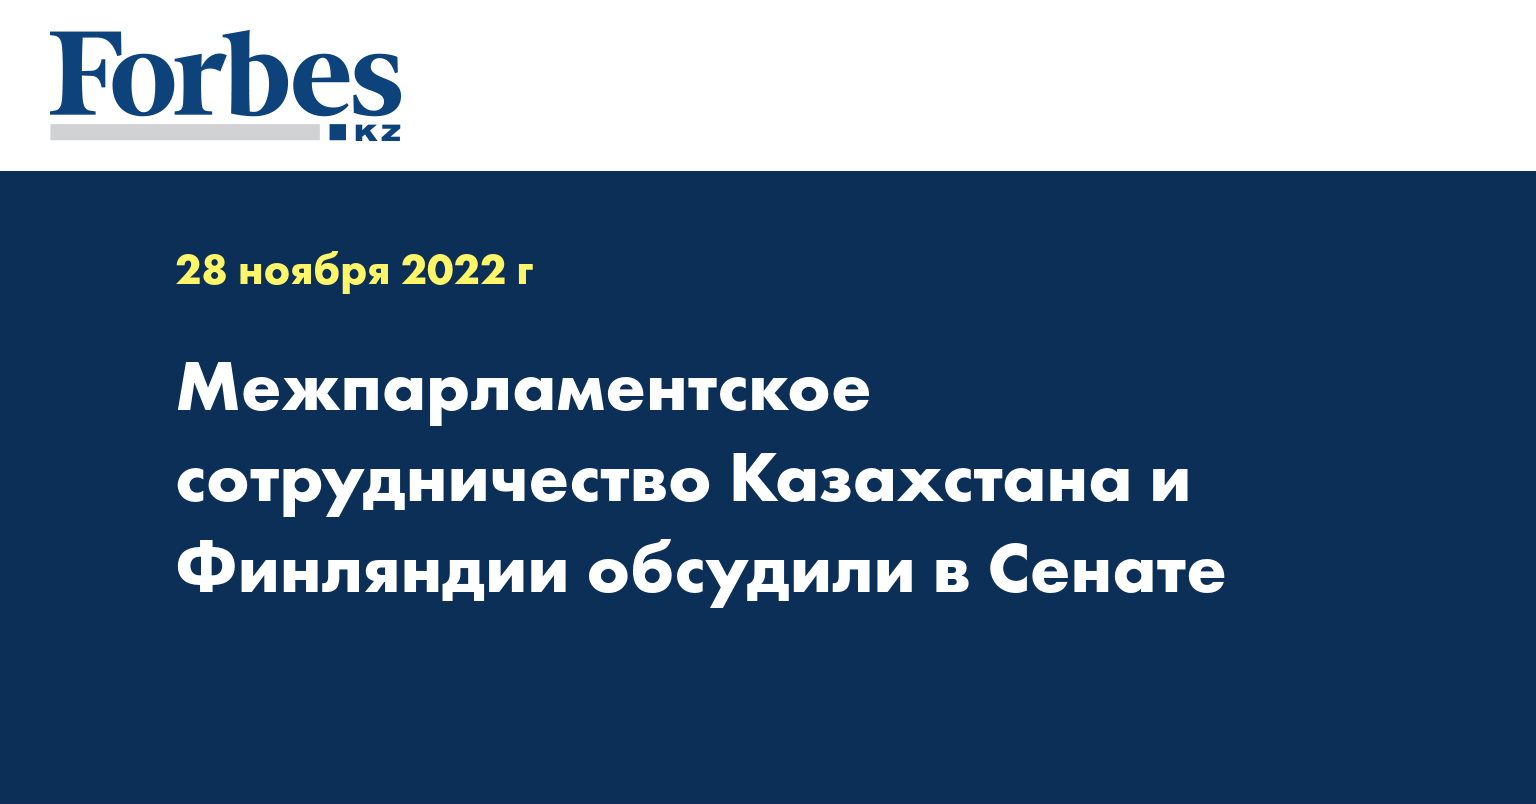 Межпарламентское сотрудничество Казахстана и Финляндии обсудили в Сенате